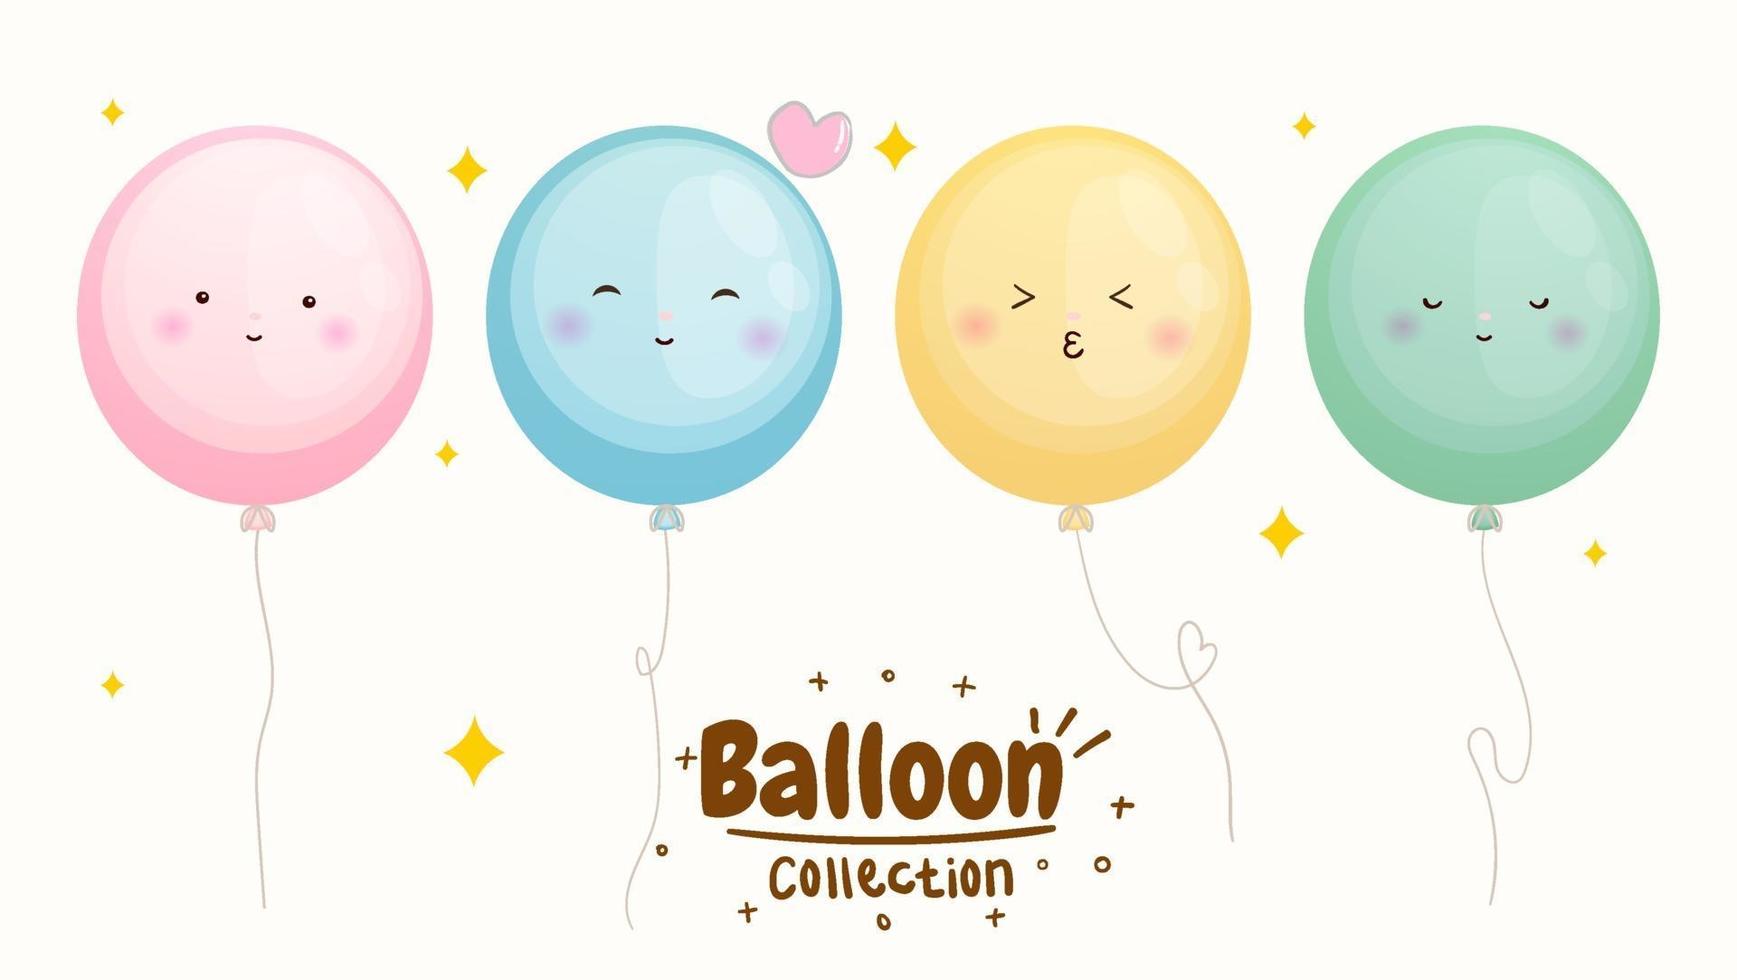 conjunto de linda colección de globos emoji vector